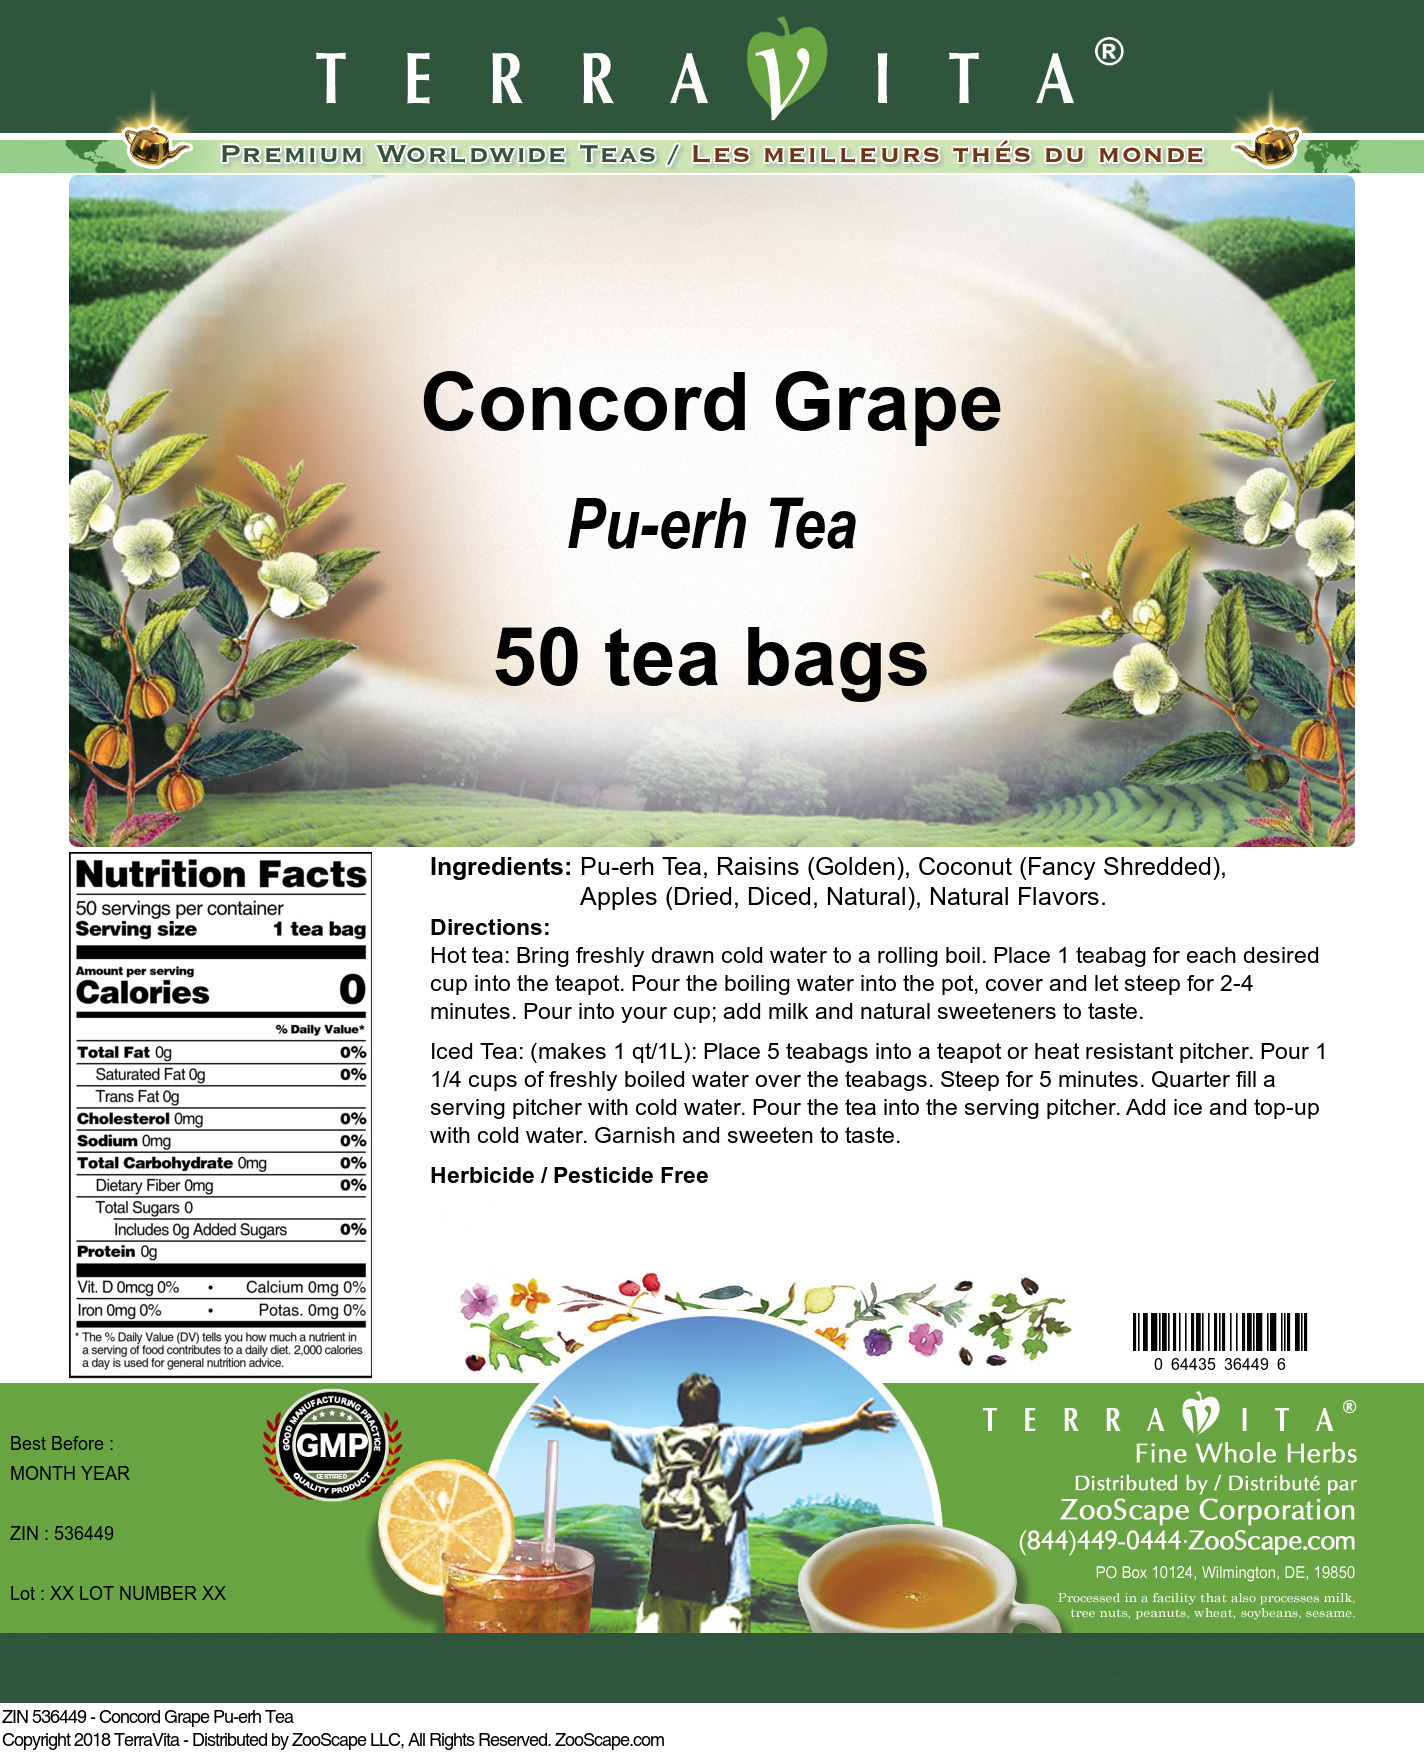 Concord Grape Pu-erh Tea - Label